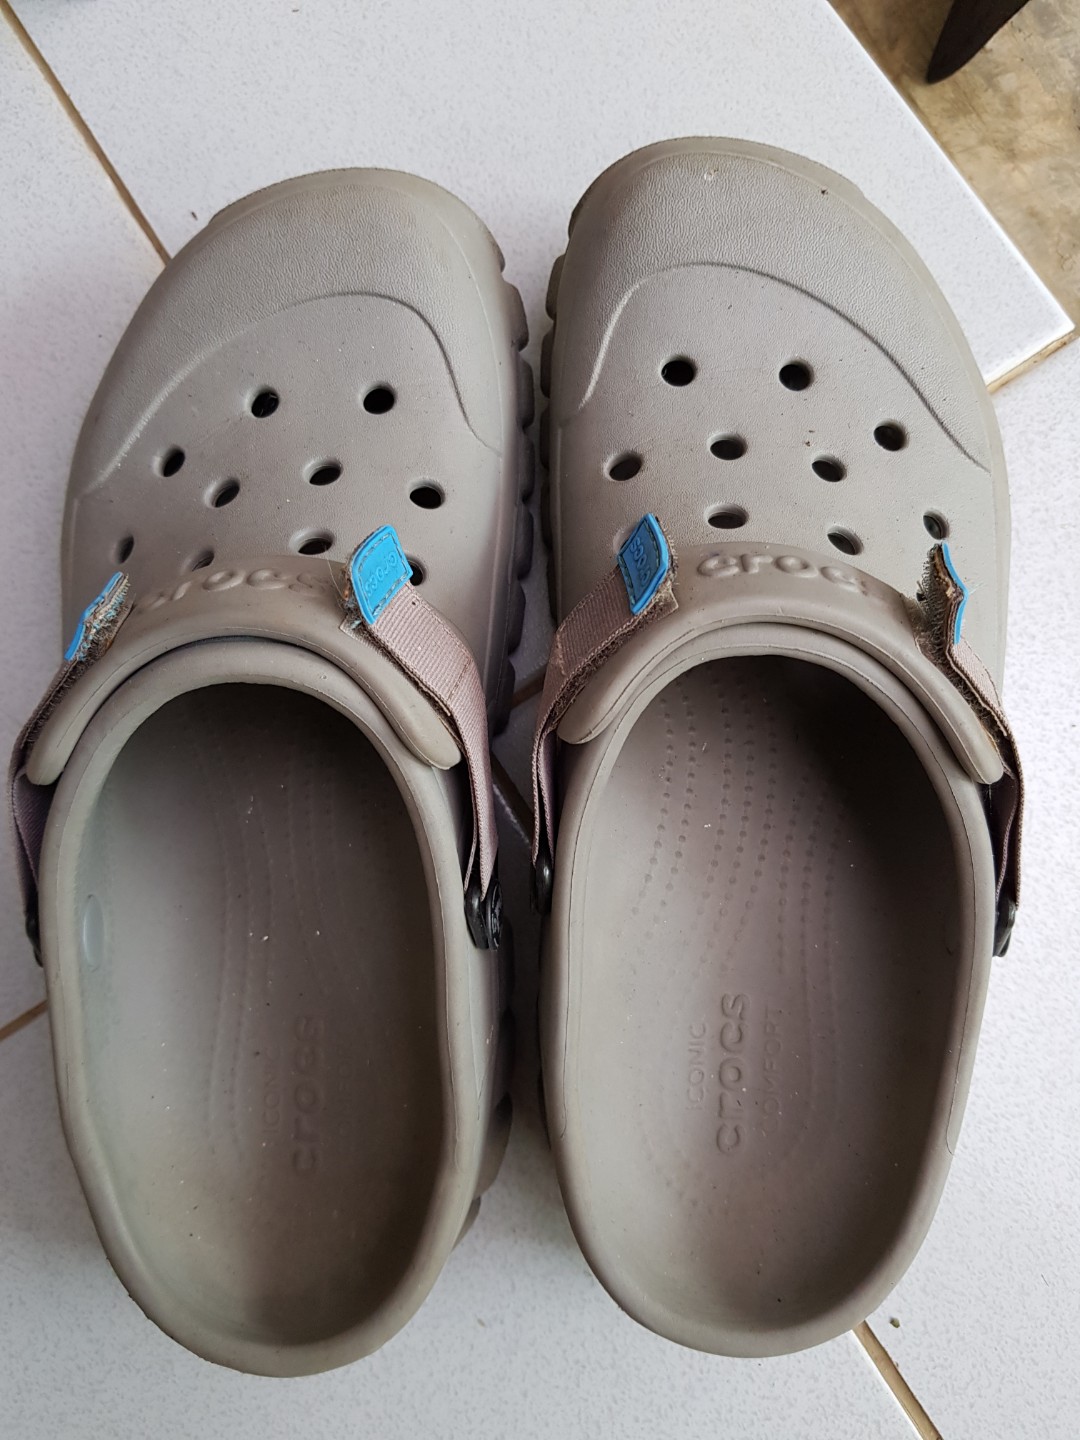 harga sandal crocs original